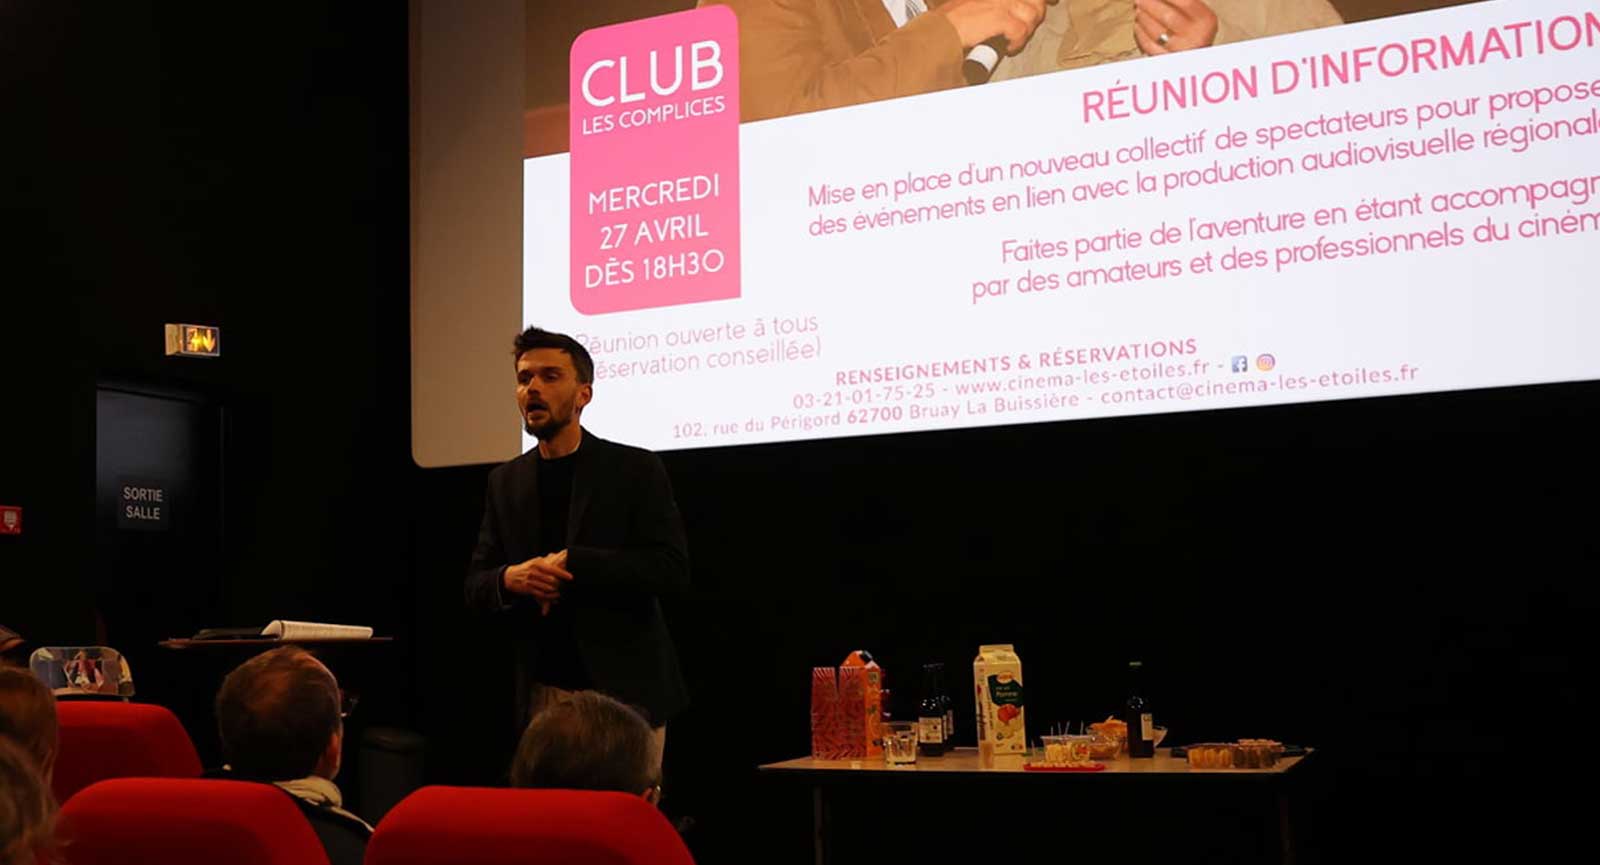 Club Les Complices - Cinéma Les Étoiles - Bruay la Buissière